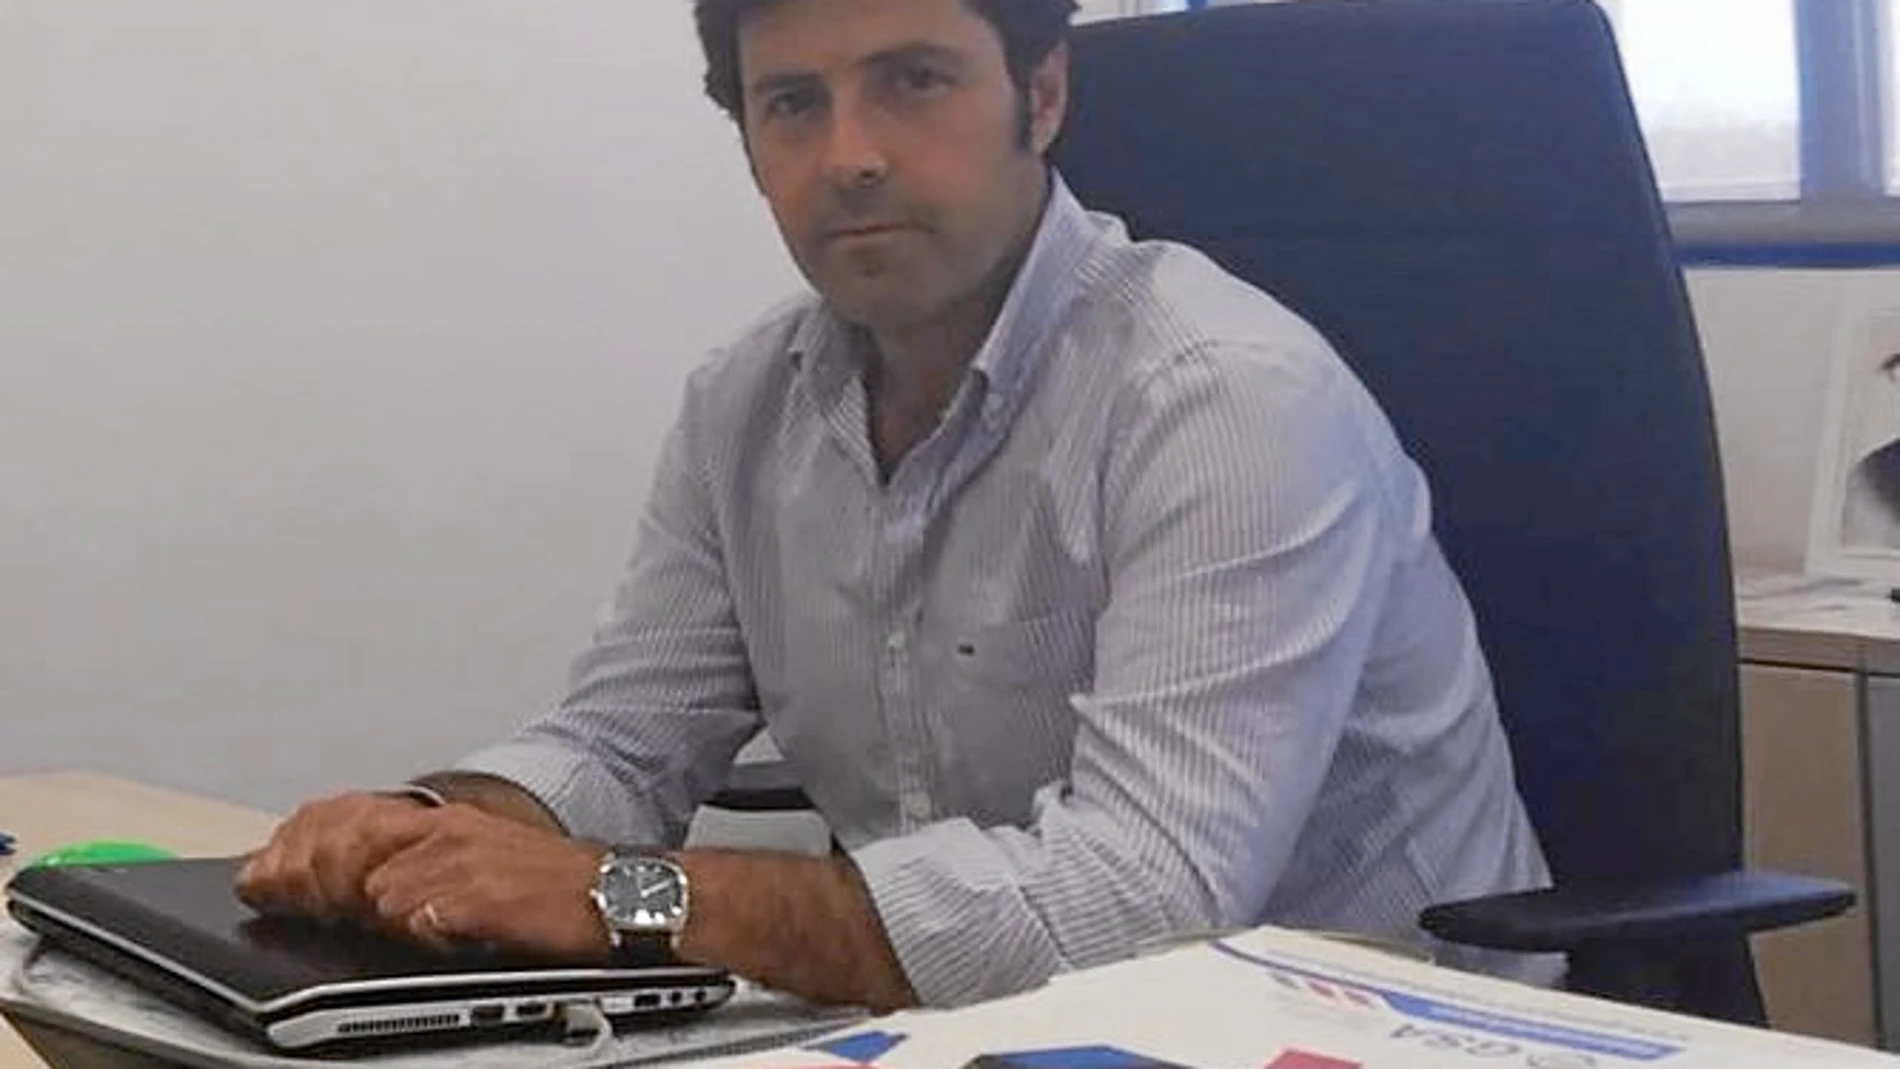 Pedro Caraballo/ Gerente de GSA Servicios ambientale. Una empresa del sector con un perfil único en Andalucía